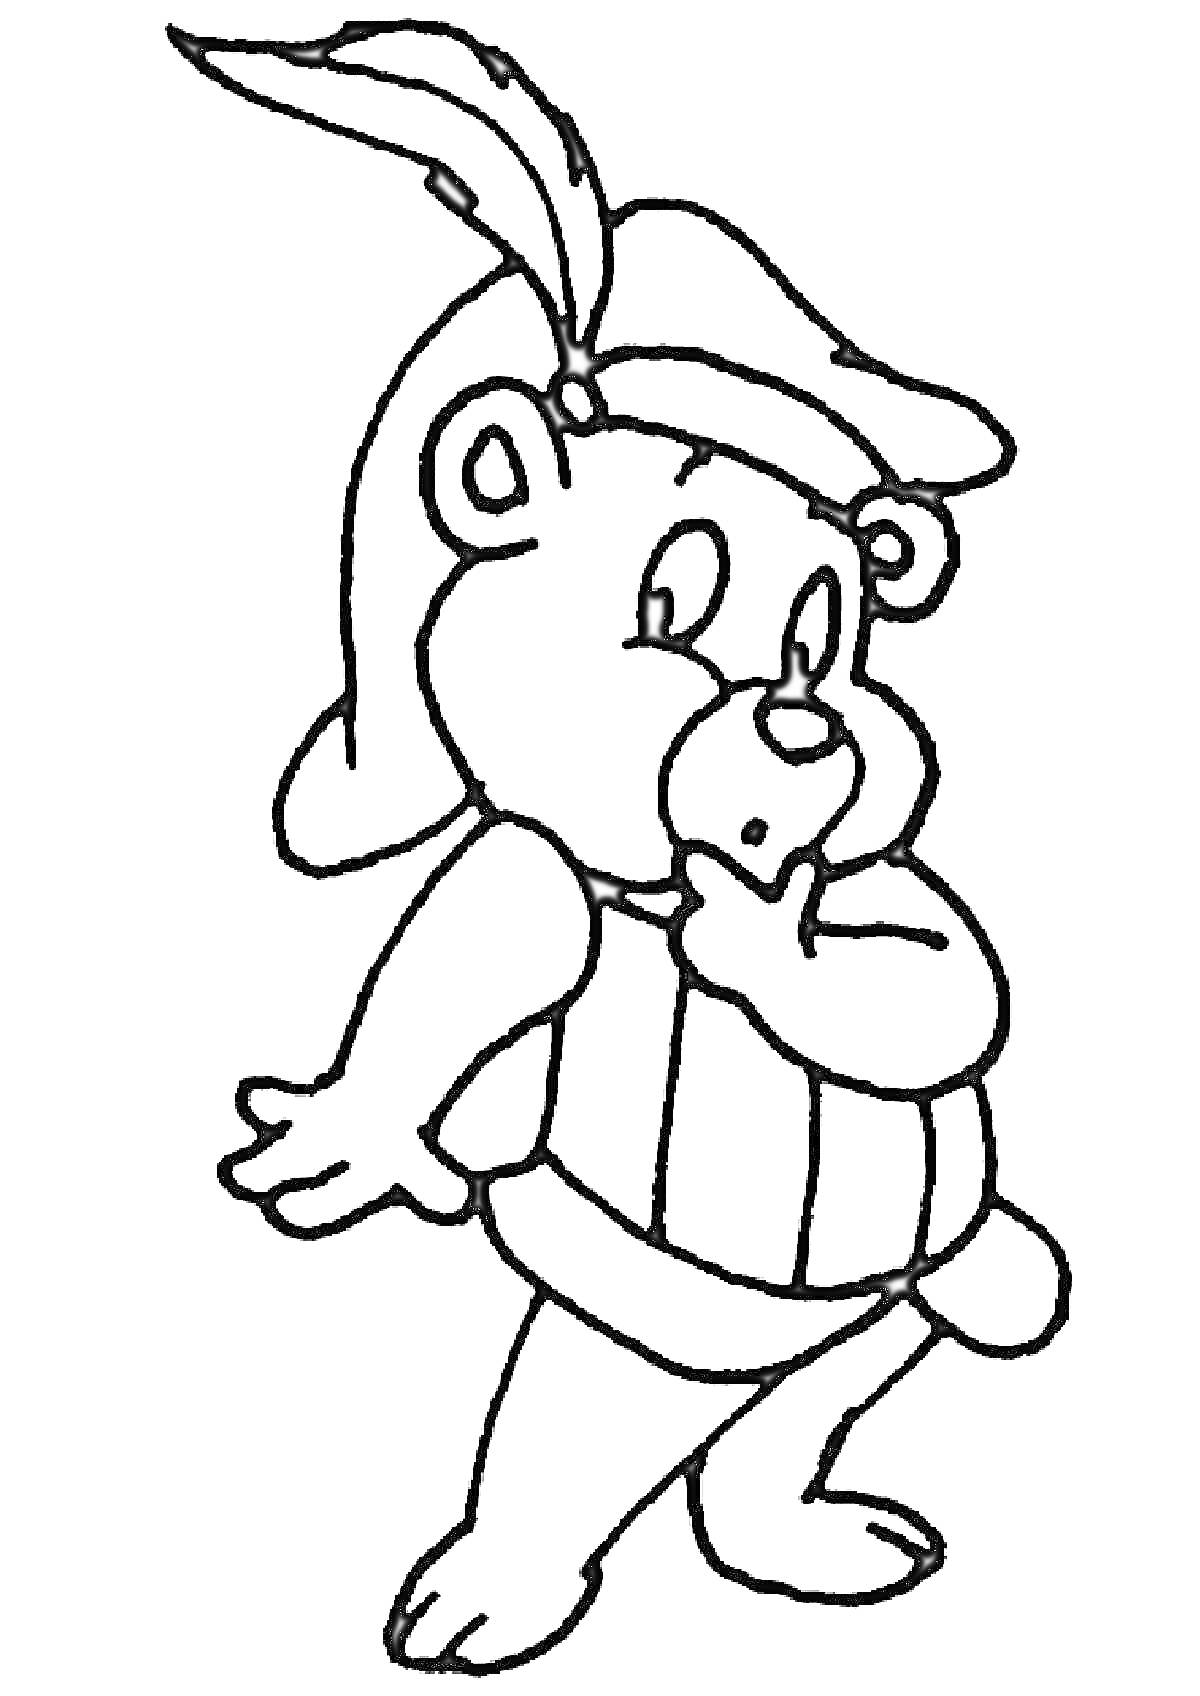 Мишка Гамми в шлеме с пером, позирующий с поднятой рукой ко рту